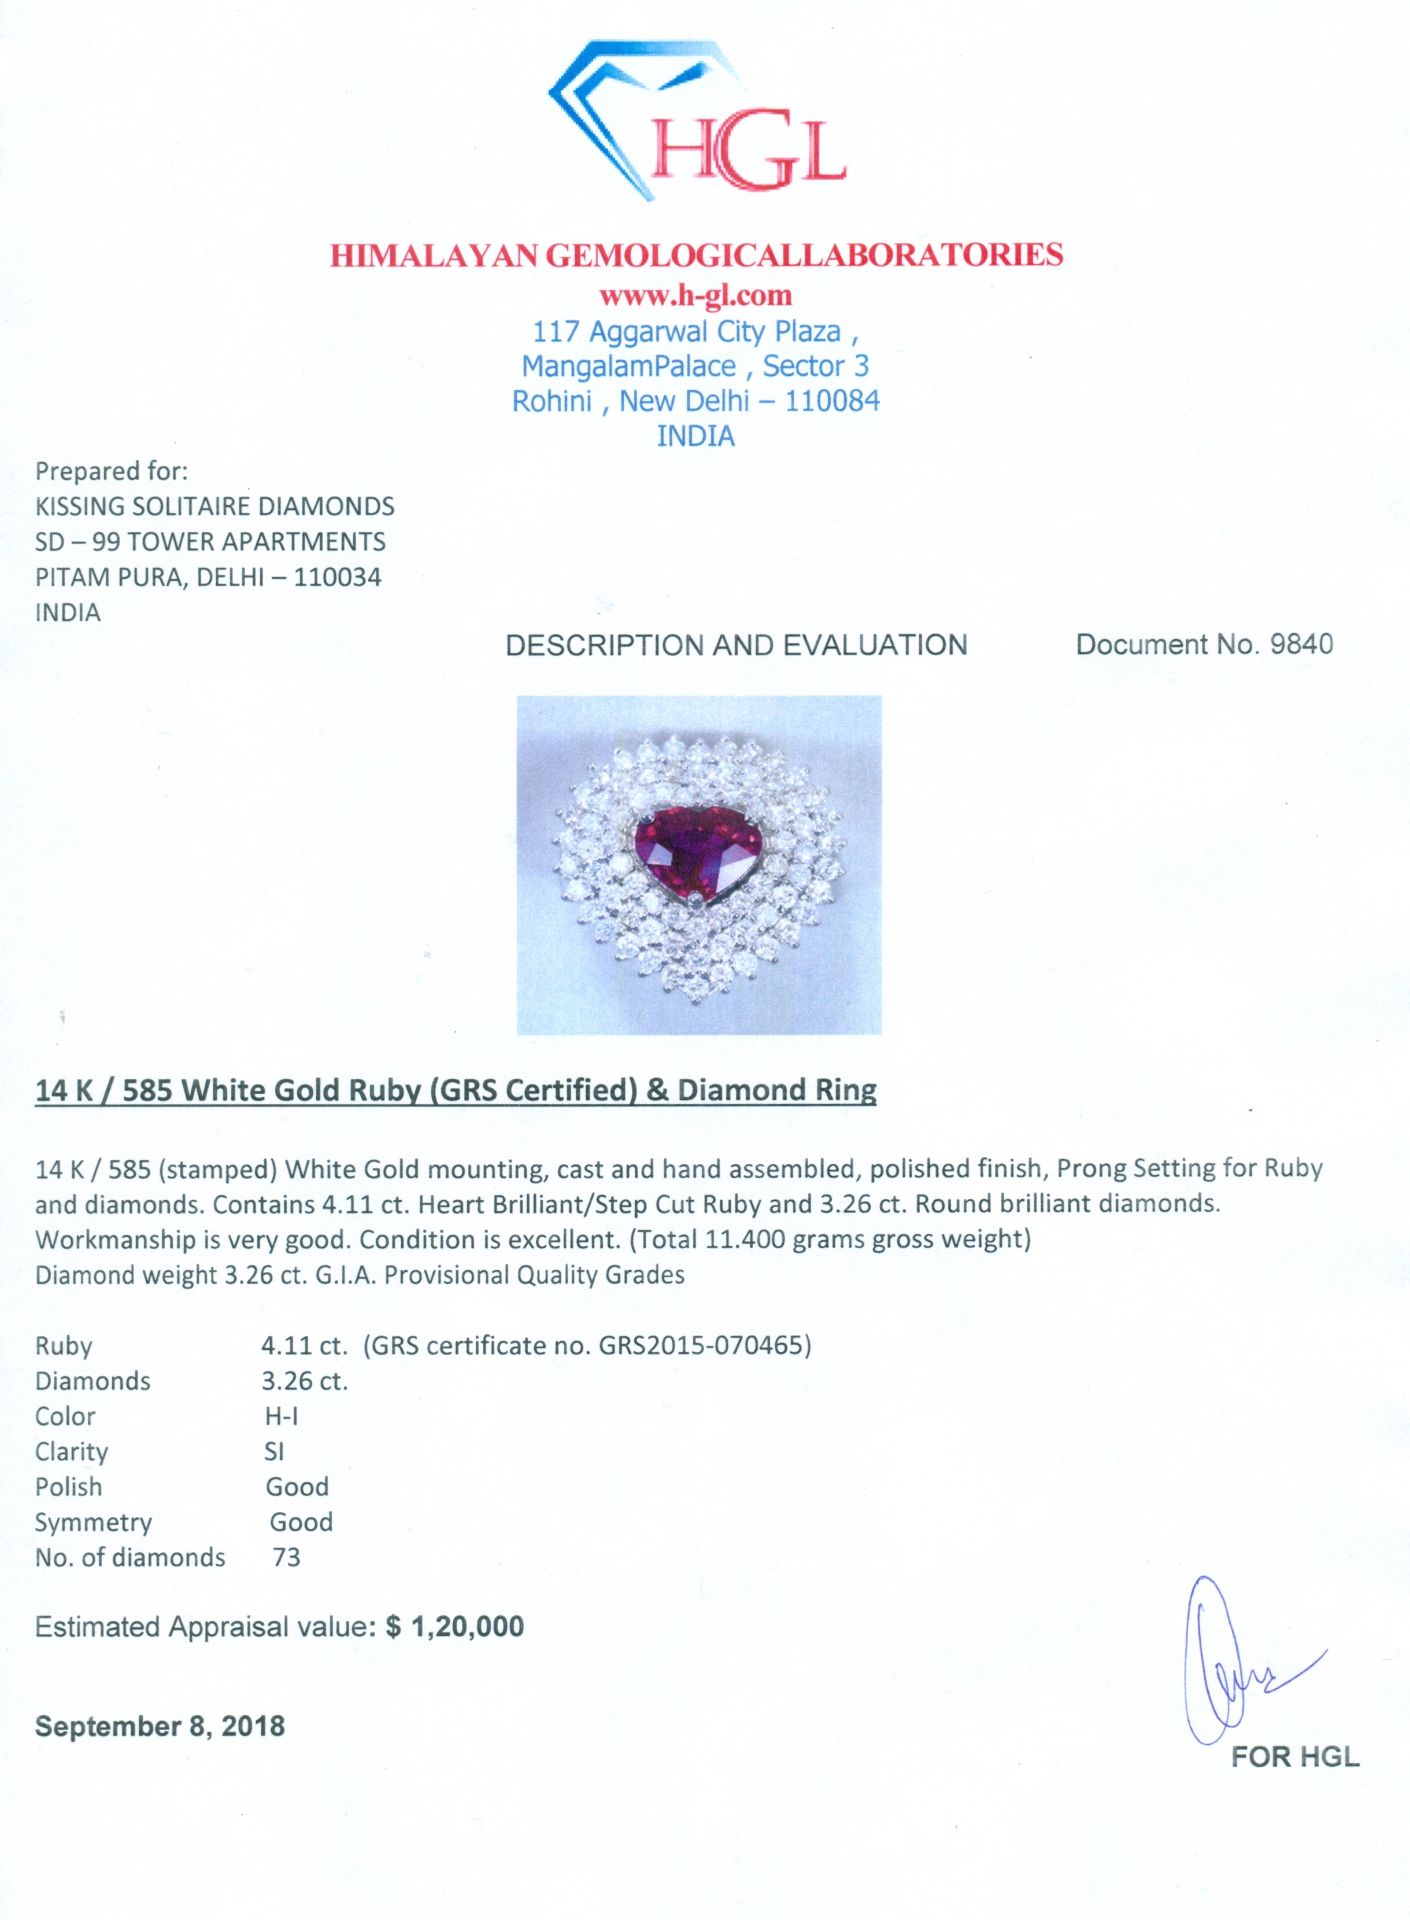 14 K / 585 White Gold Designer Ruby (GRS Certified) & Diamond Ring - Image 9 of 10